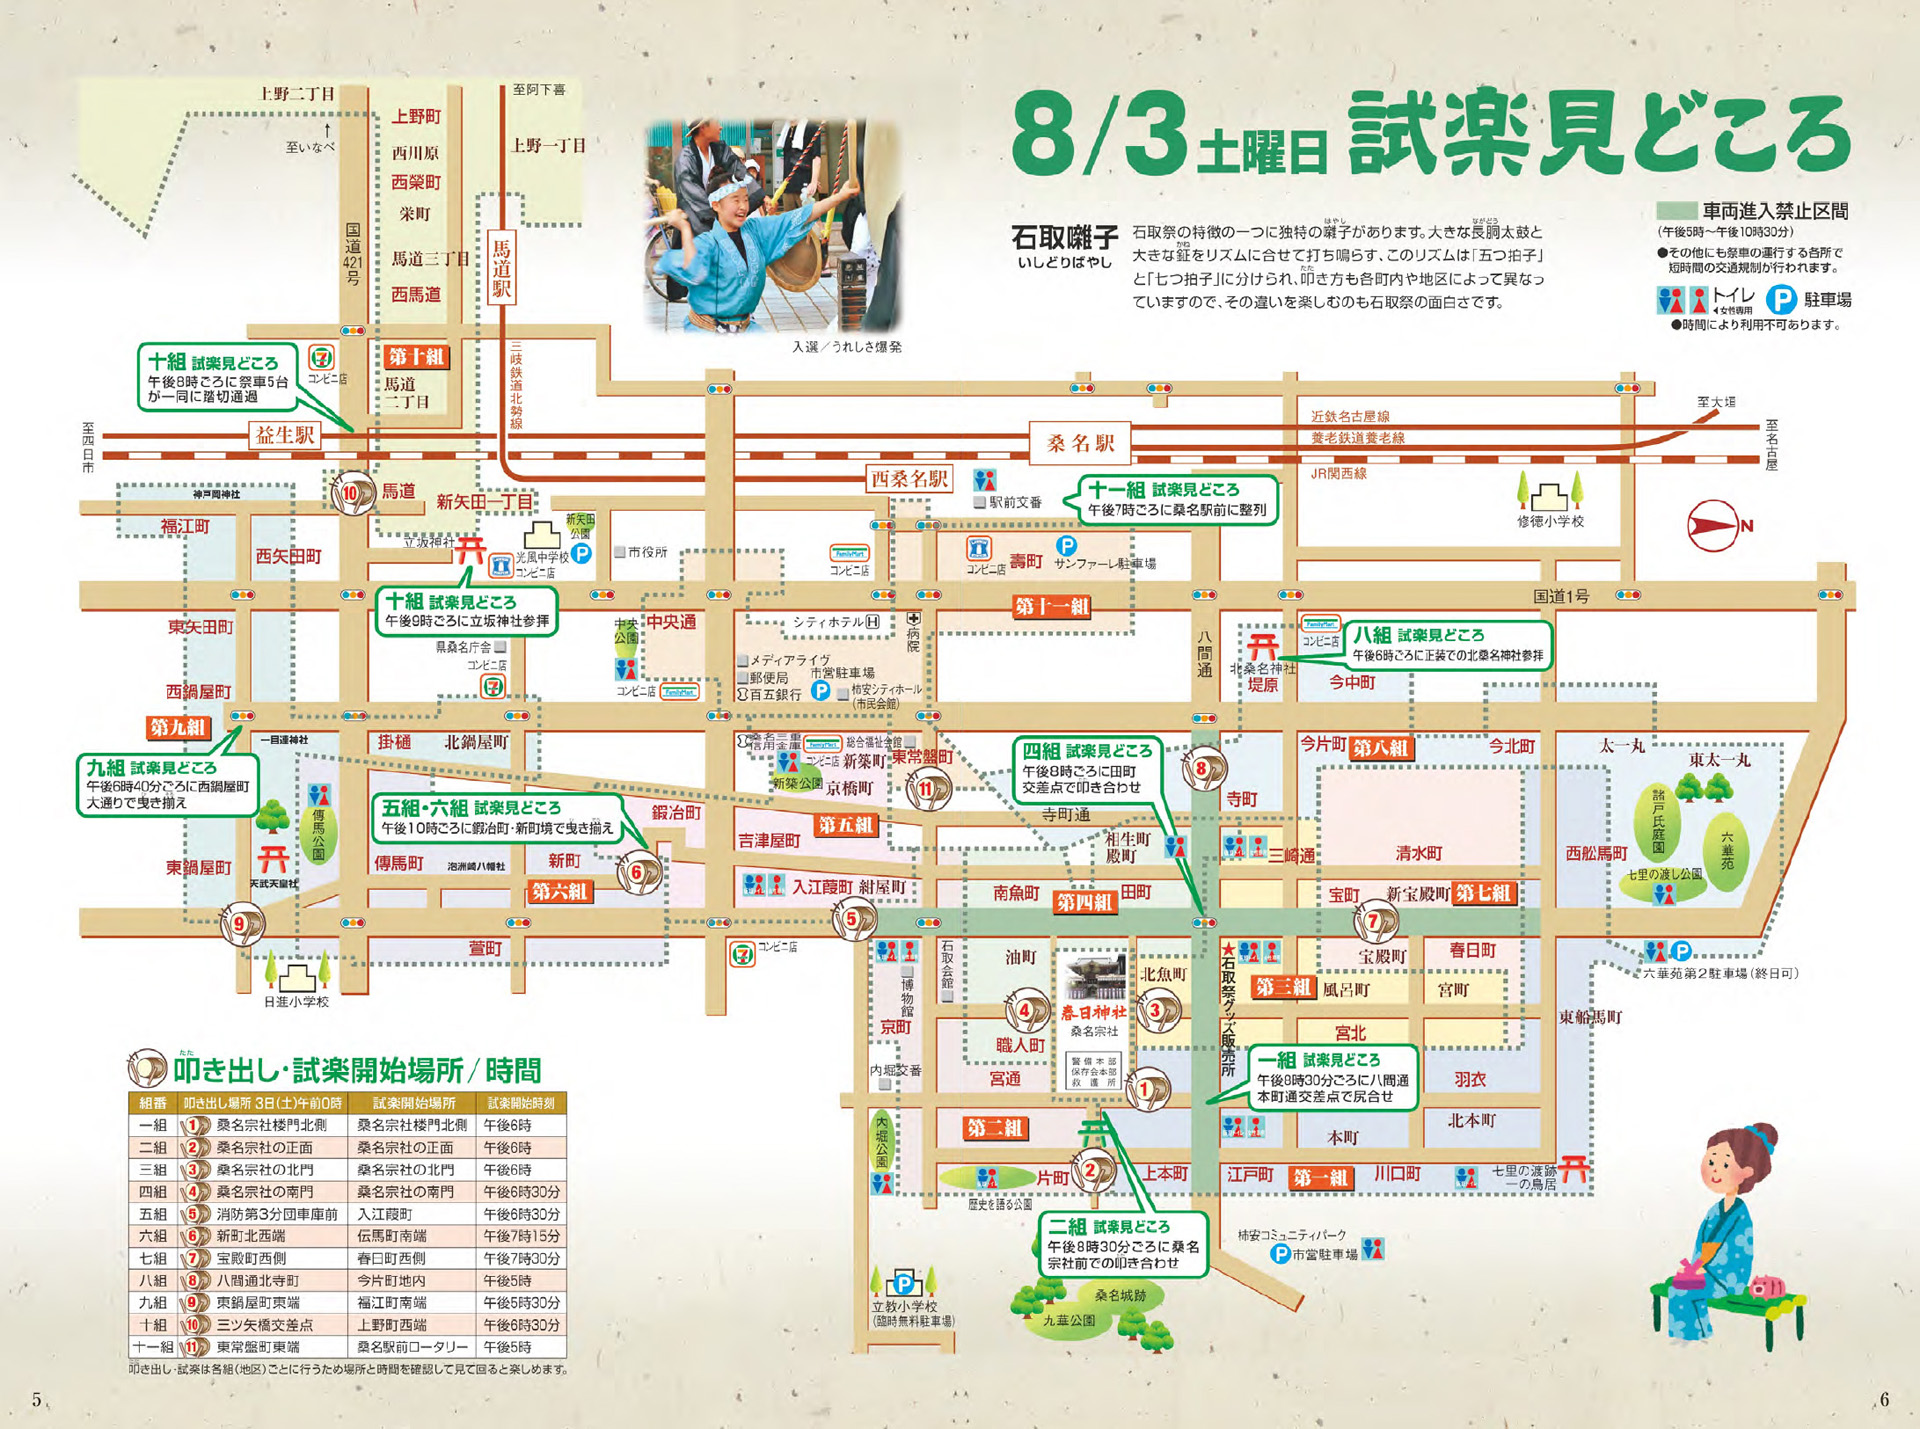 桑名石取祭保存会 公式ホームページ(三重県桑名市)